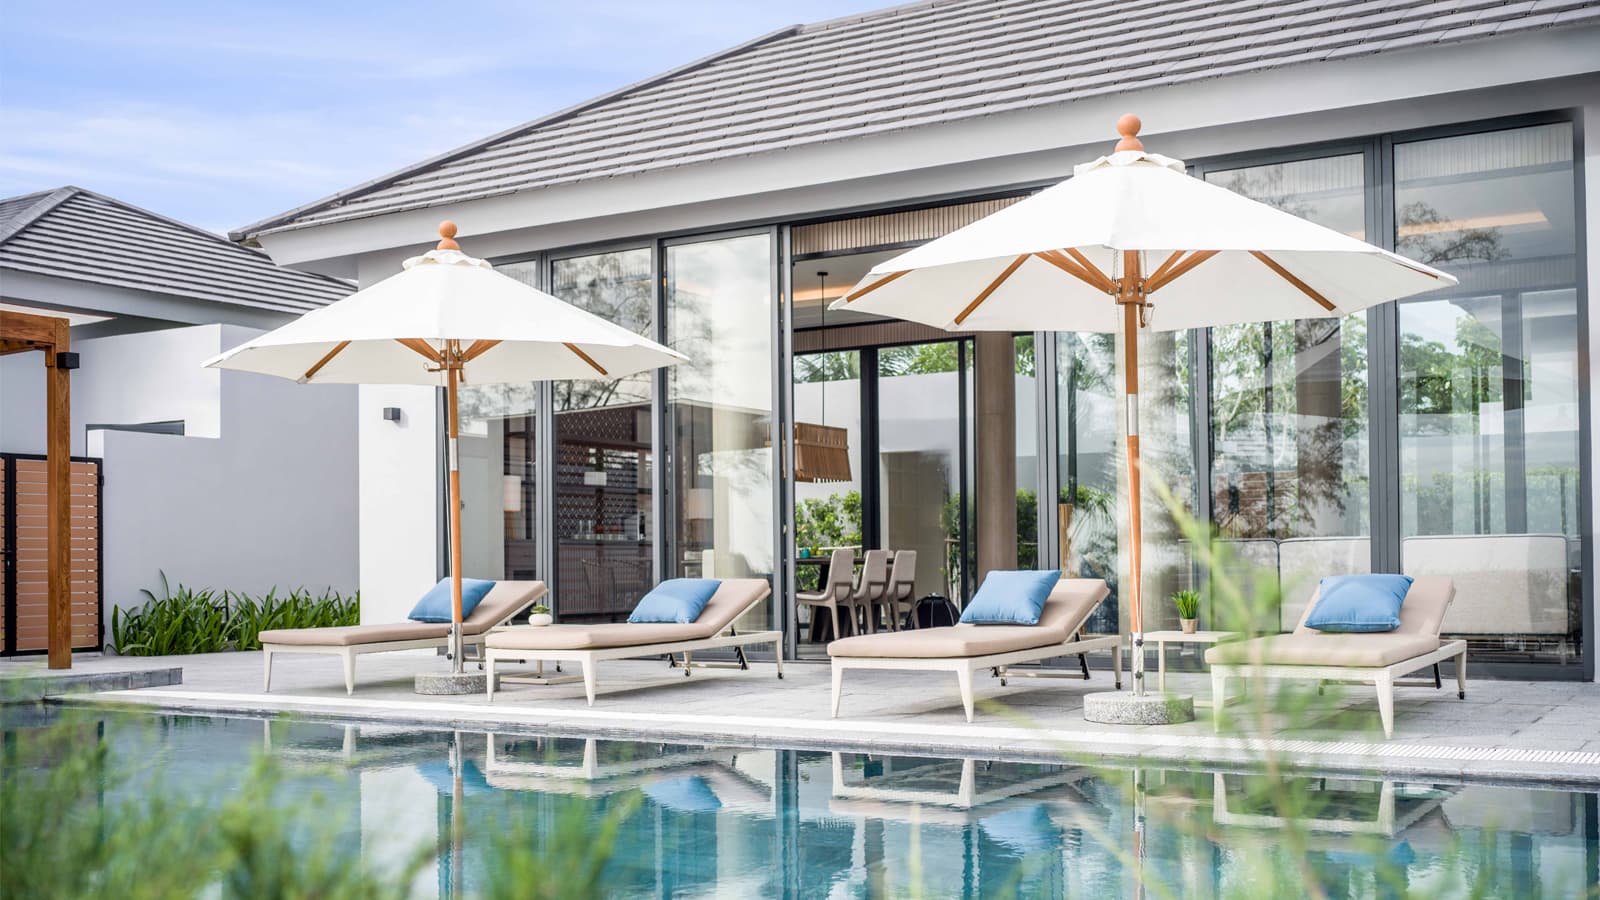 Crowne Plaza Phu Quoc Starbay: Khu nghỉ dưỡng mới ra mắt với những trải nghiệm khác biệt cho du khách